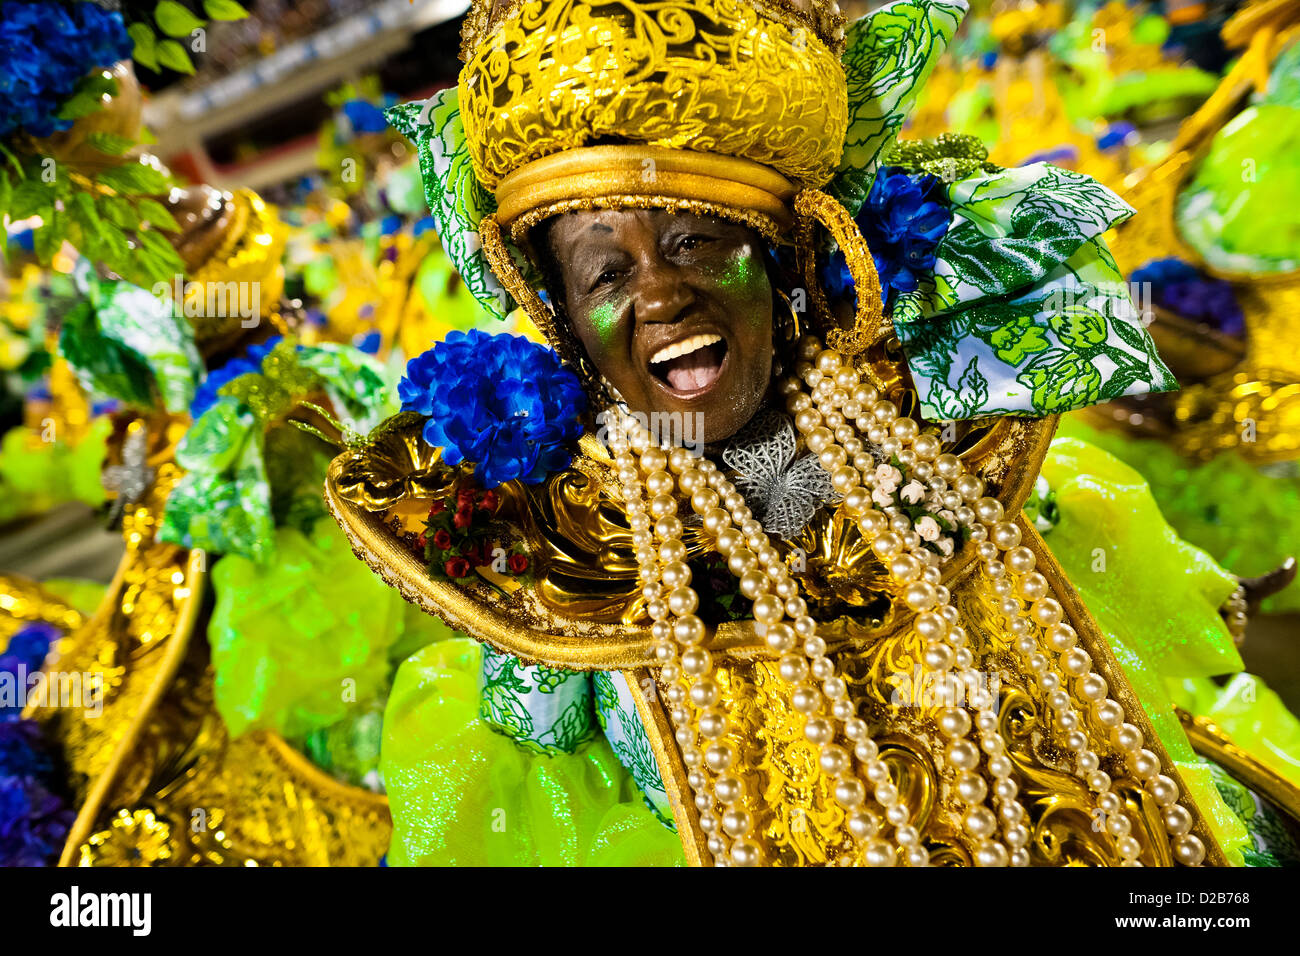 Une école de samba dancer pendant le carnaval défilé groupe d'accès à la sambadrome de Rio de Janeiro, Brésil. Banque D'Images